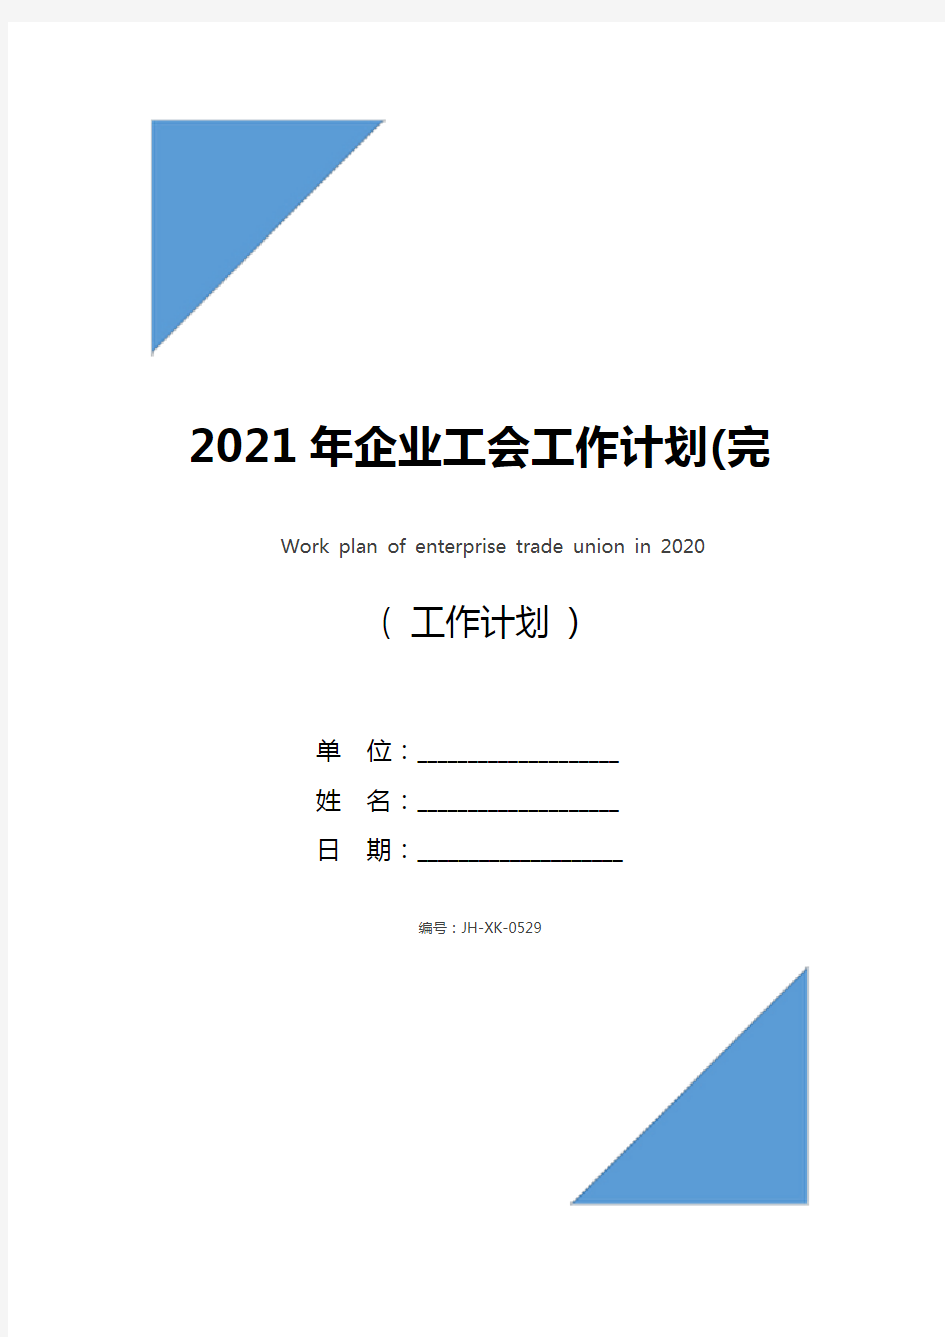 2021年企业工会工作计划(完整版)